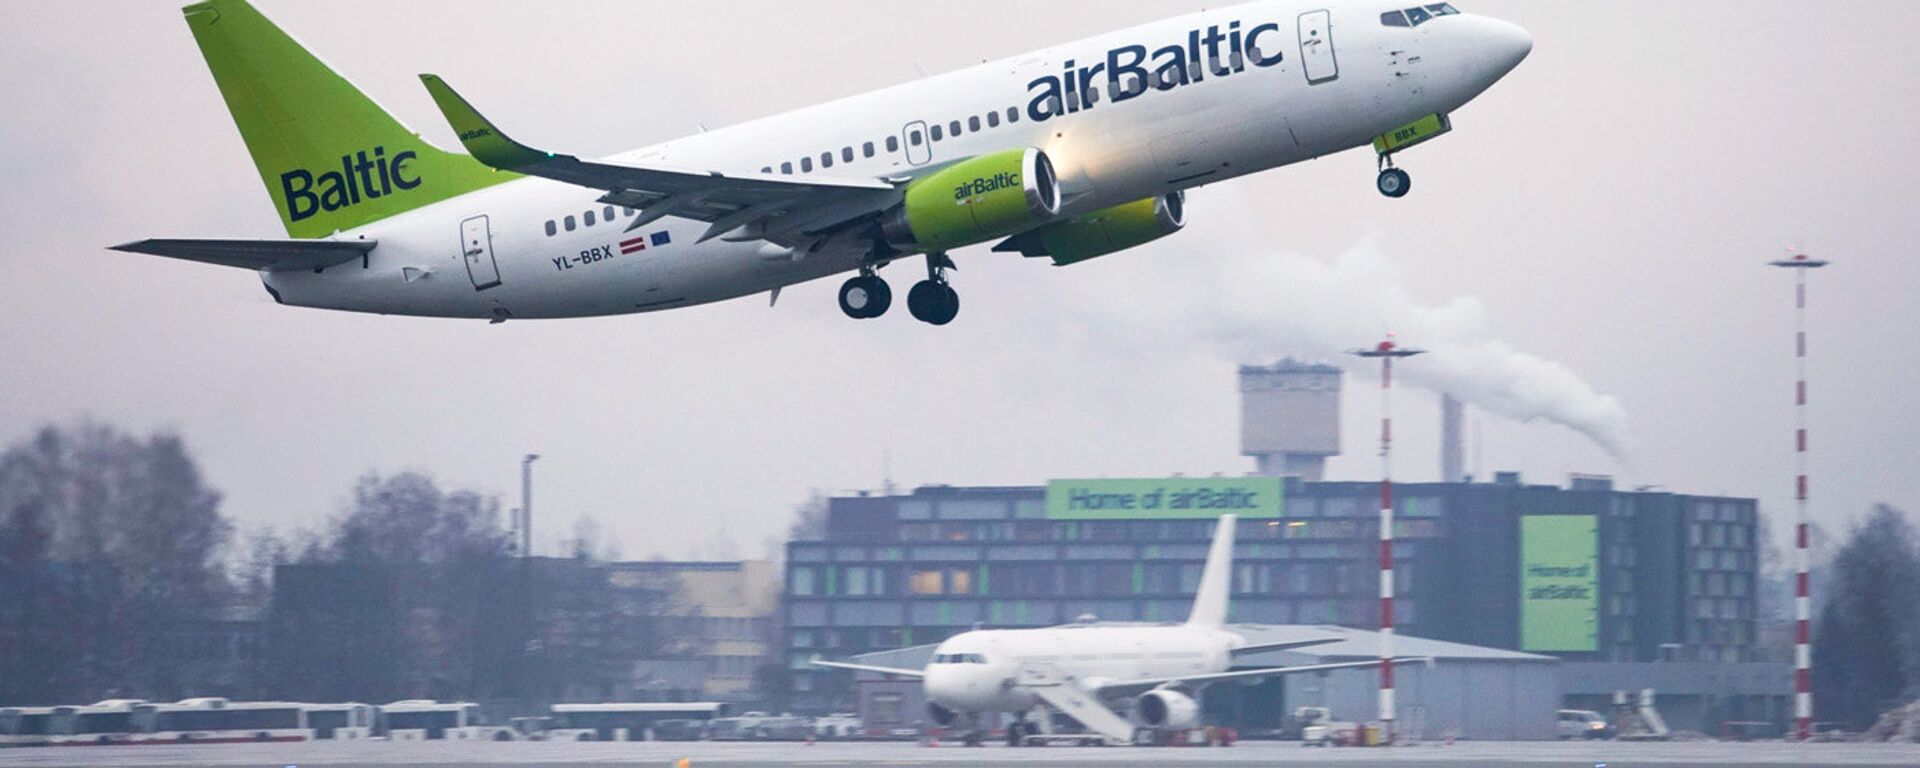 Взлет самолета Boeing 737-36Q авиакомпании аirBaltic из аэропорта Рига - Sputnik Латвия, 1920, 13.06.2019